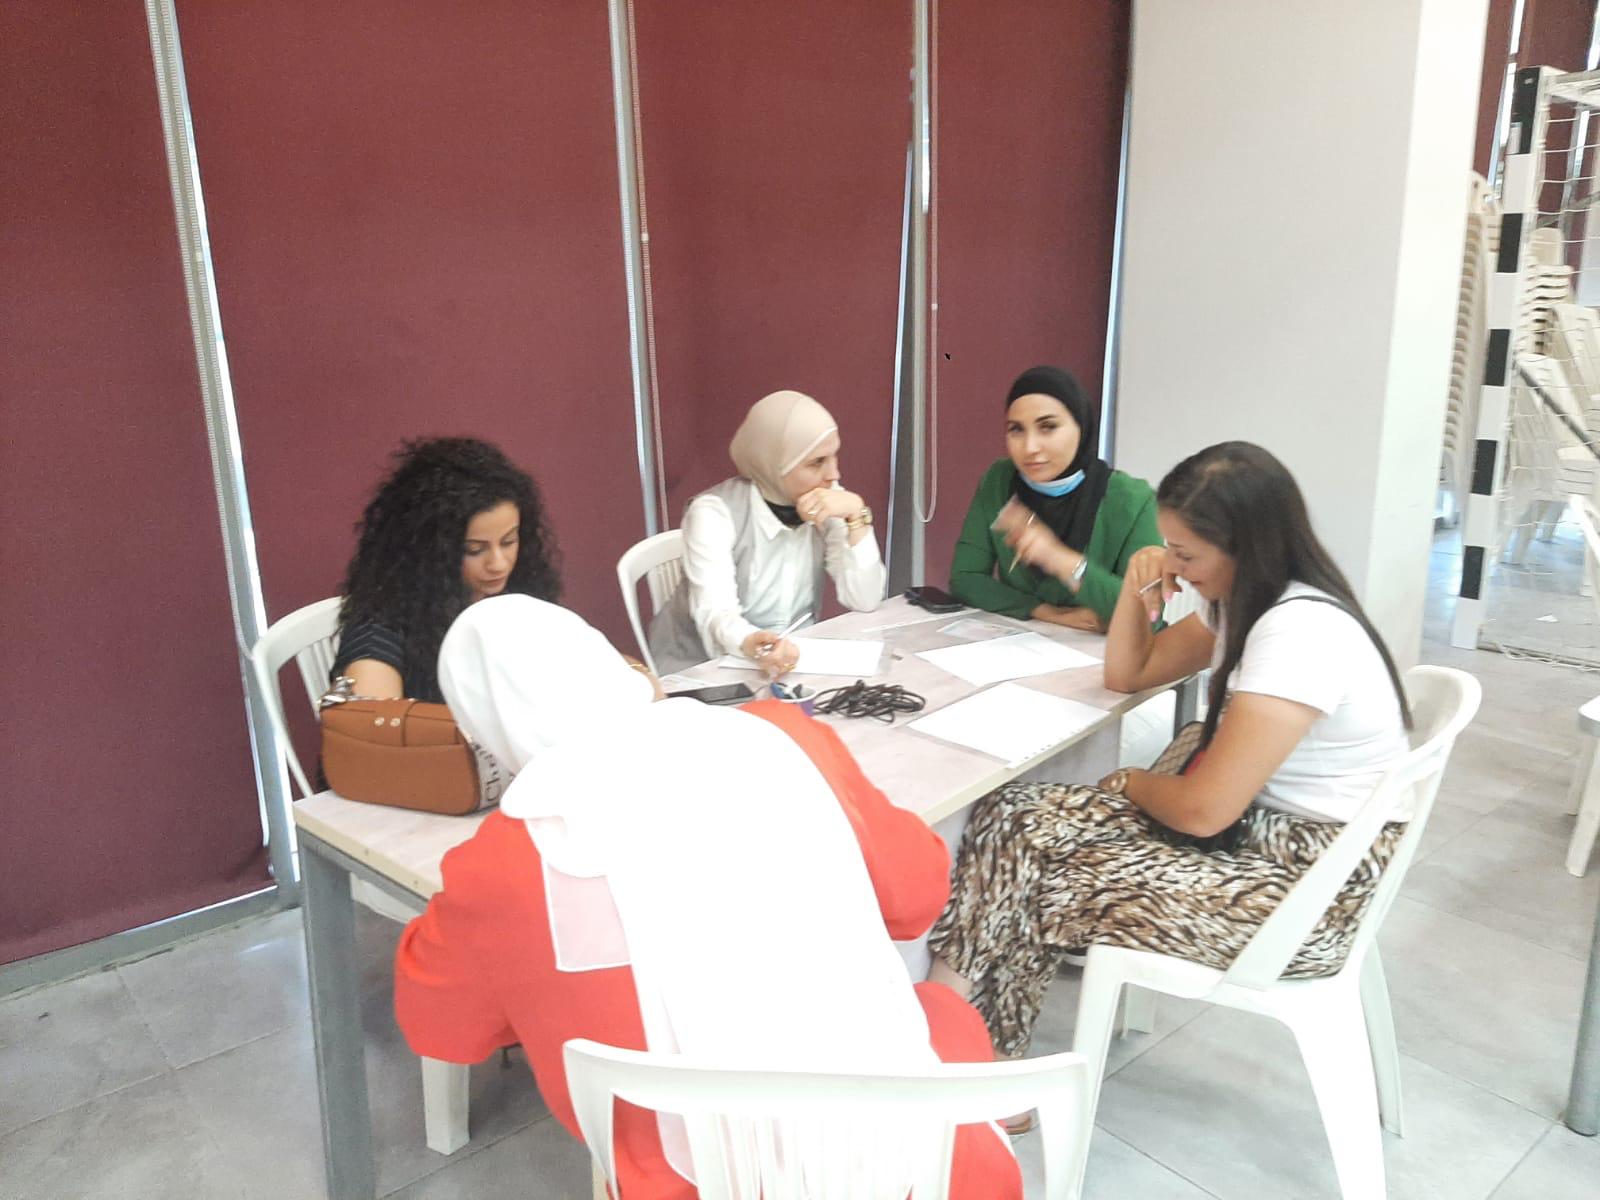  اجتماع للهيئة التدريسية في مدرسة حسن عرفة عشية افتتاح العام الدراسي